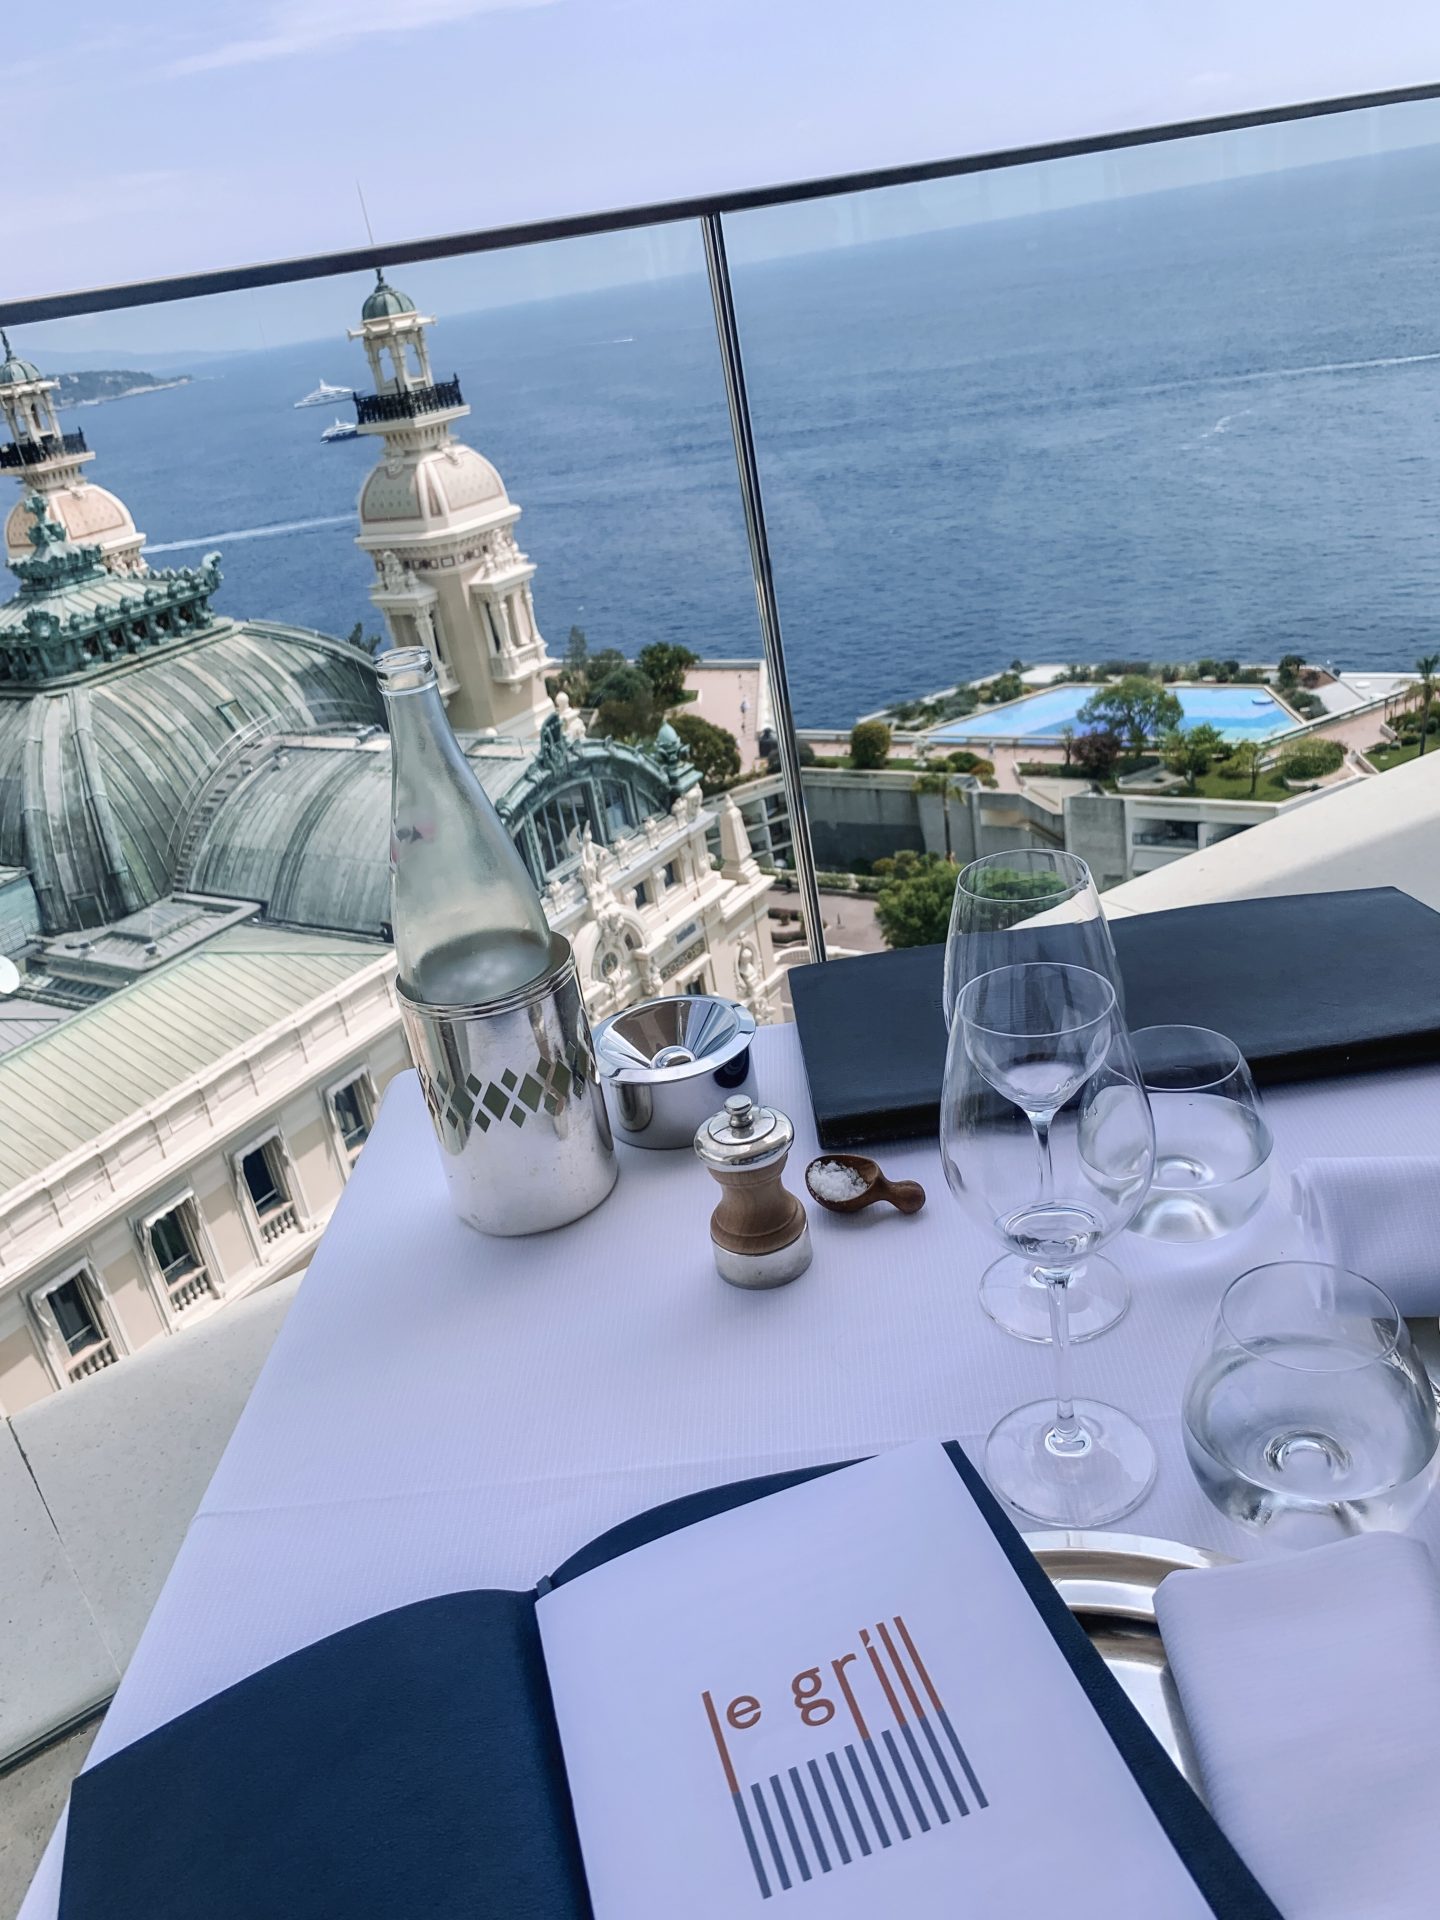 Le Grill Michelin Star restaurant, Monaco